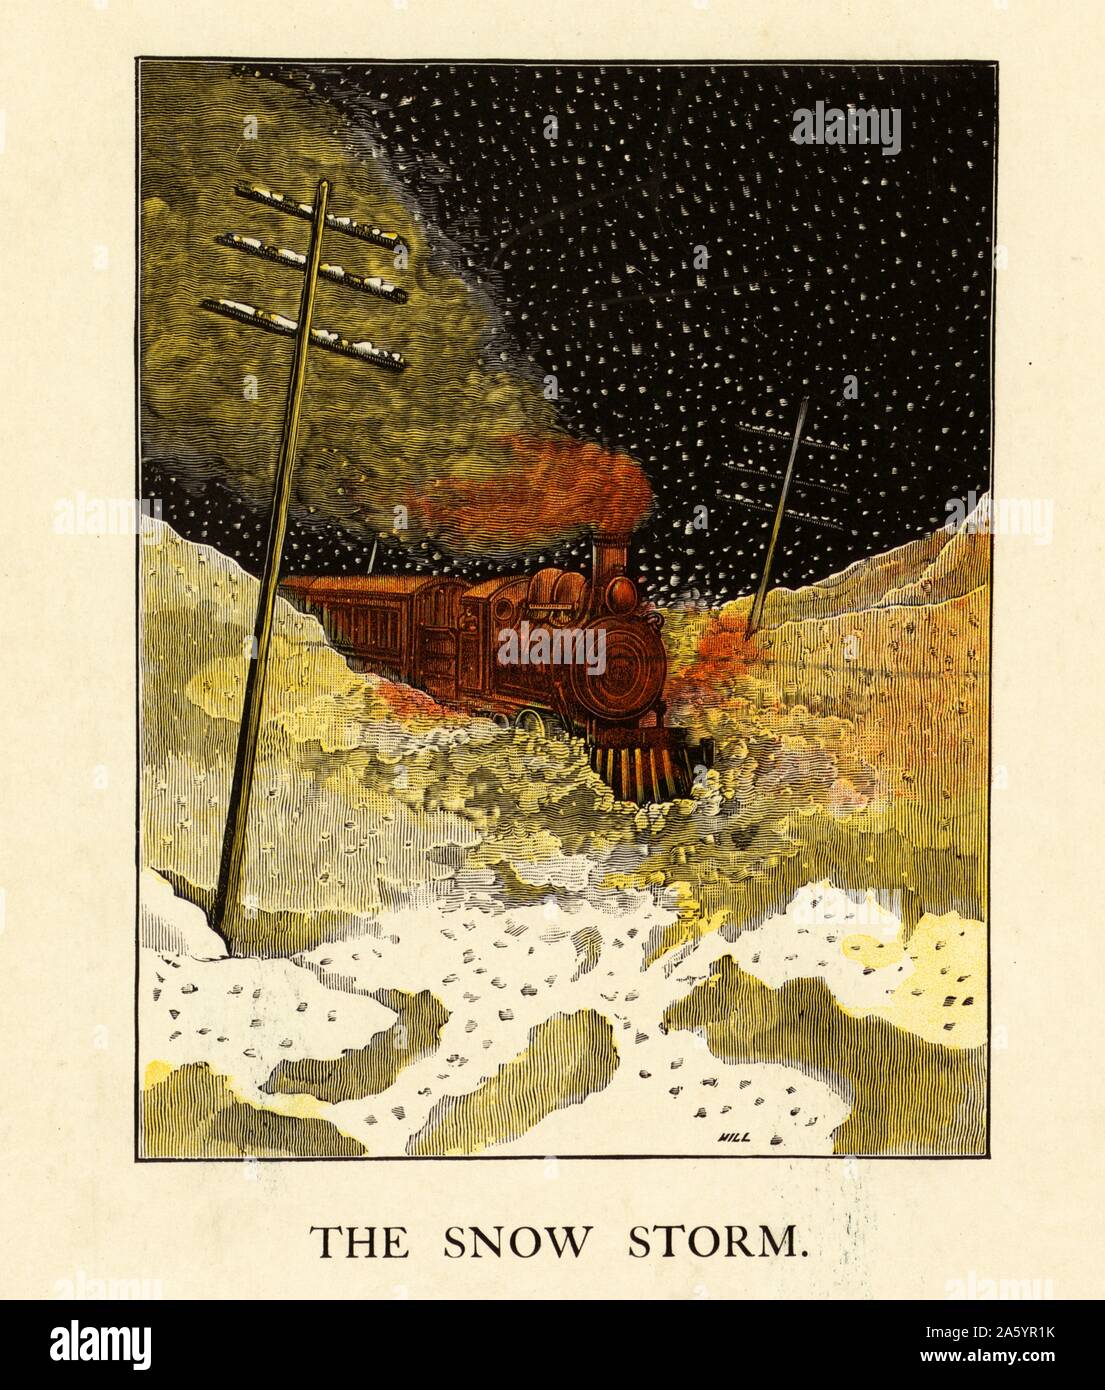 Une illustration d'un train à vapeur en marche de nuit à travers une tempête de neige 1870. Telegraph vu dans cette illustration, les polonais est devenu monnaie courante dans le milieu du 19e siècle Banque D'Images